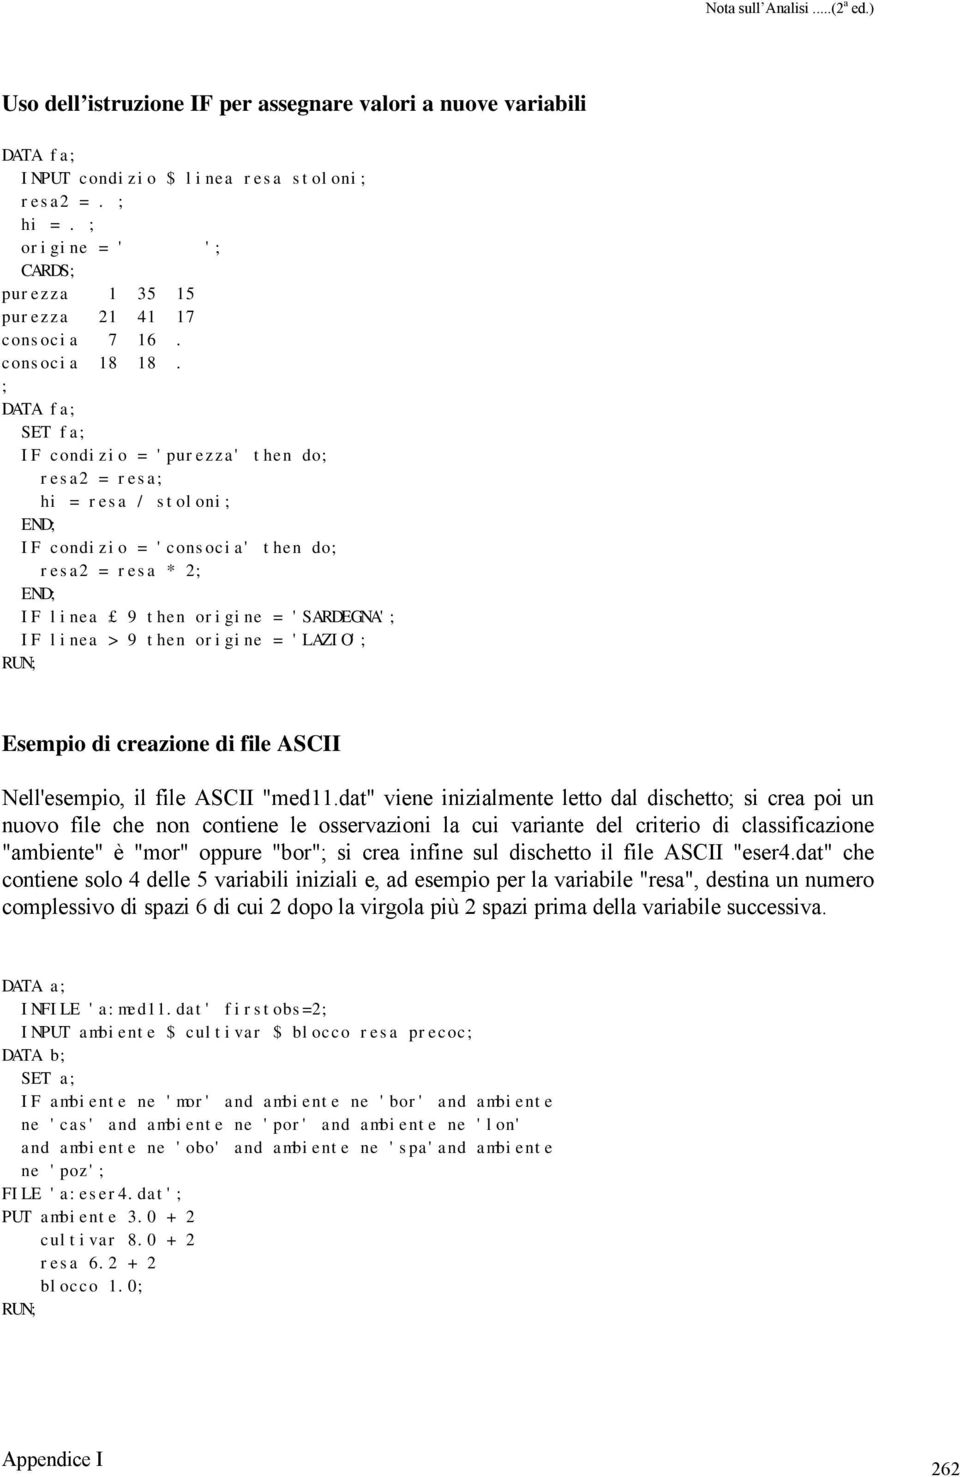 origine = 'LAZIO' RUN Esempio di creazione di file ASCII Nell'esempio, il file ASCII "med11.